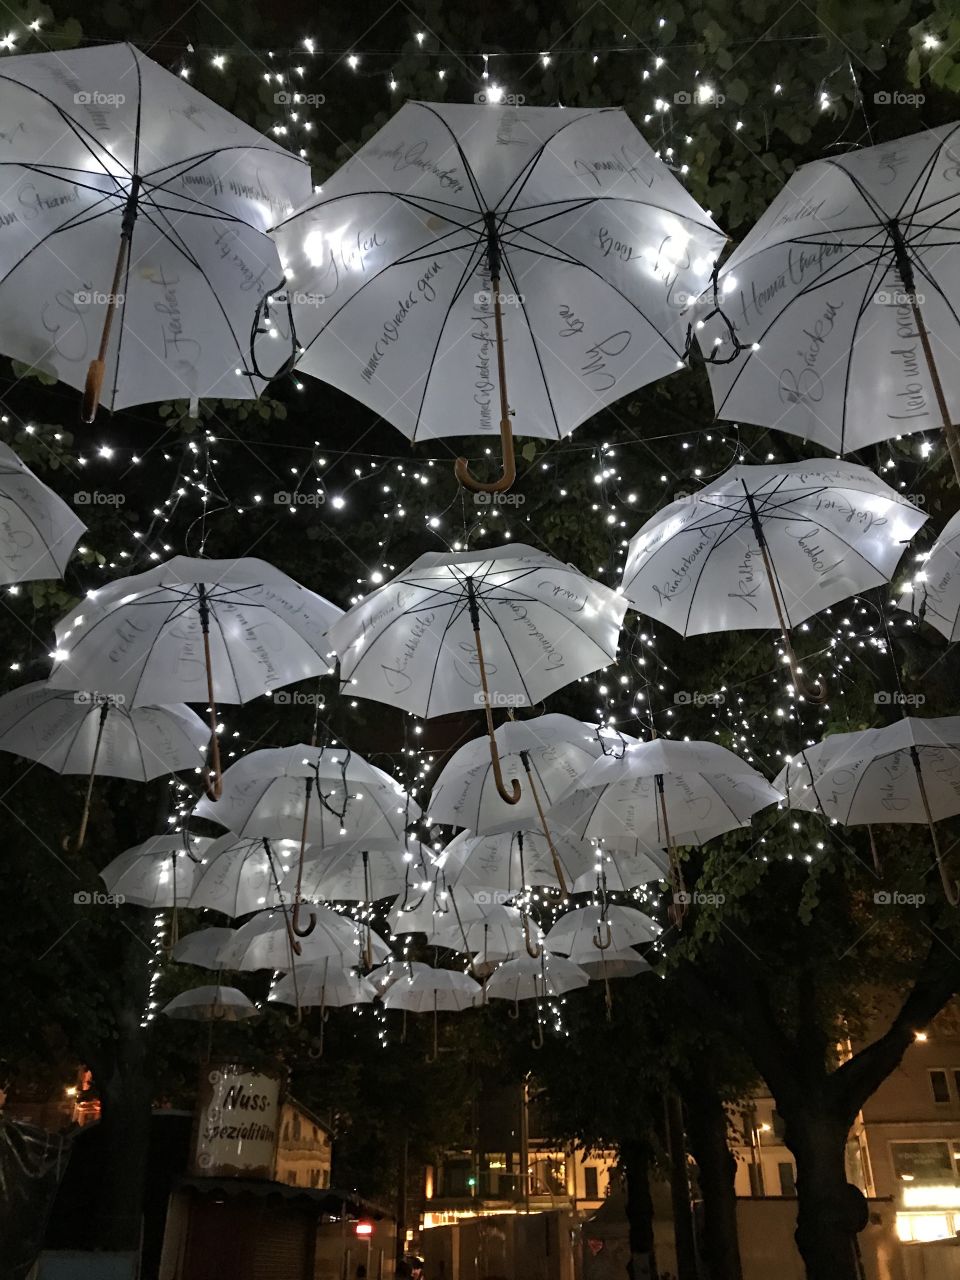 Lights of umbrellas